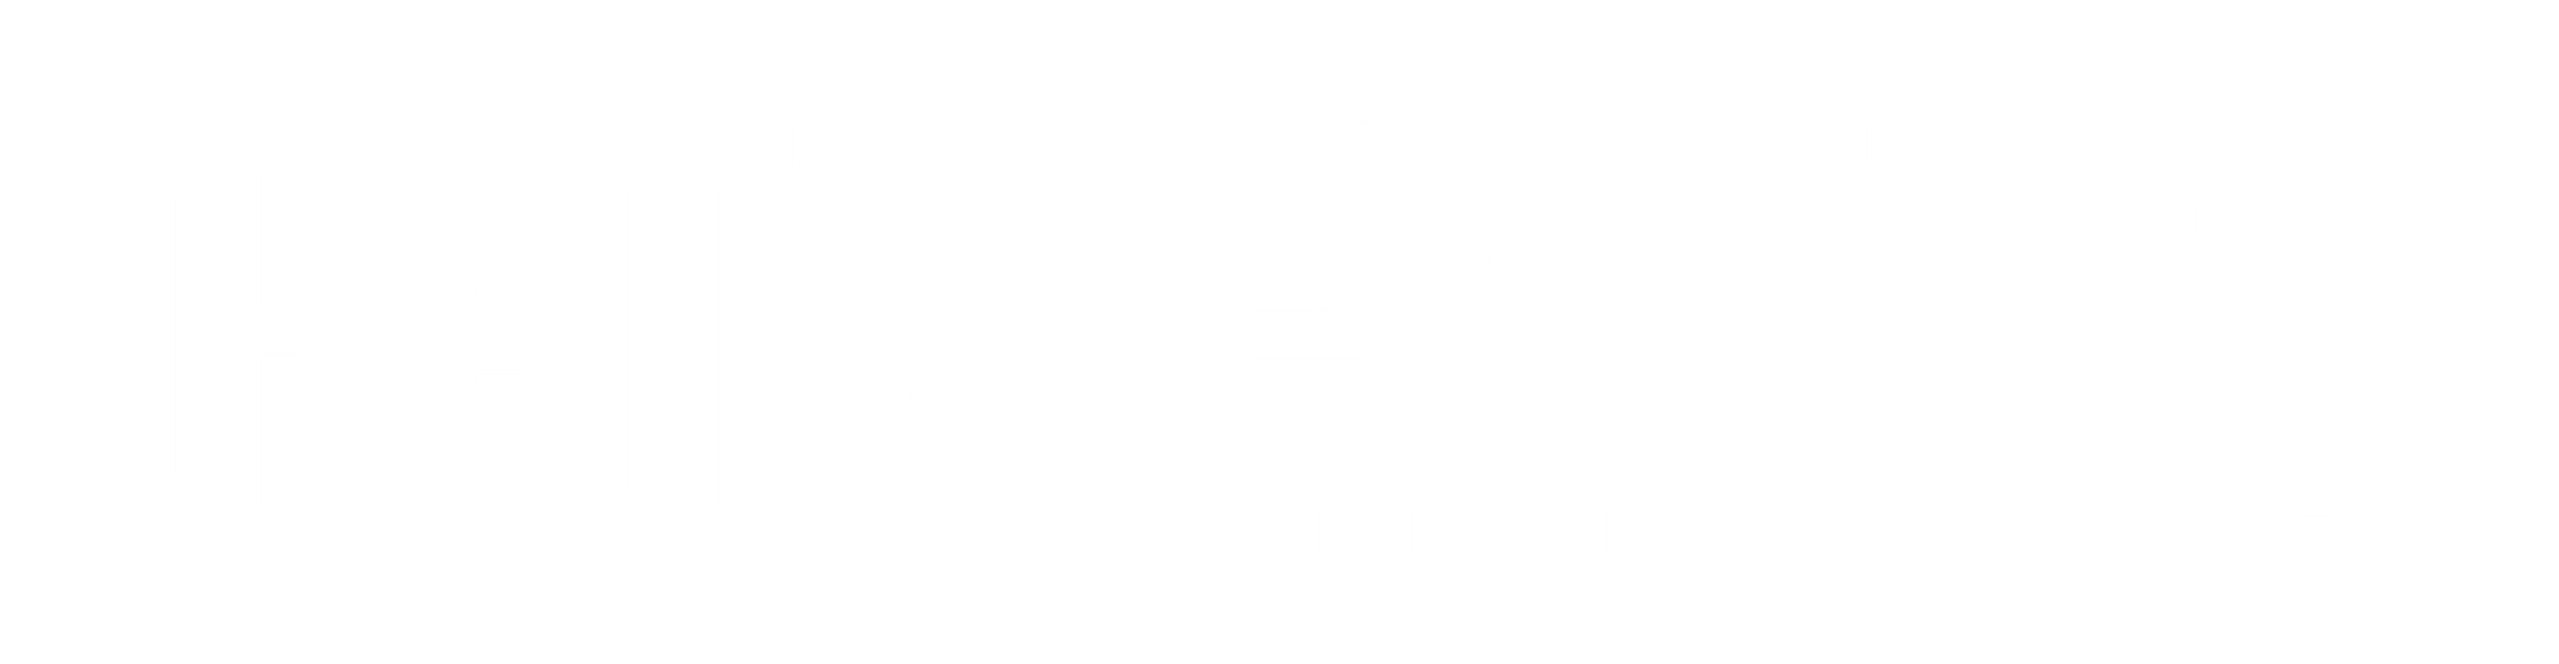 Logo El Pais